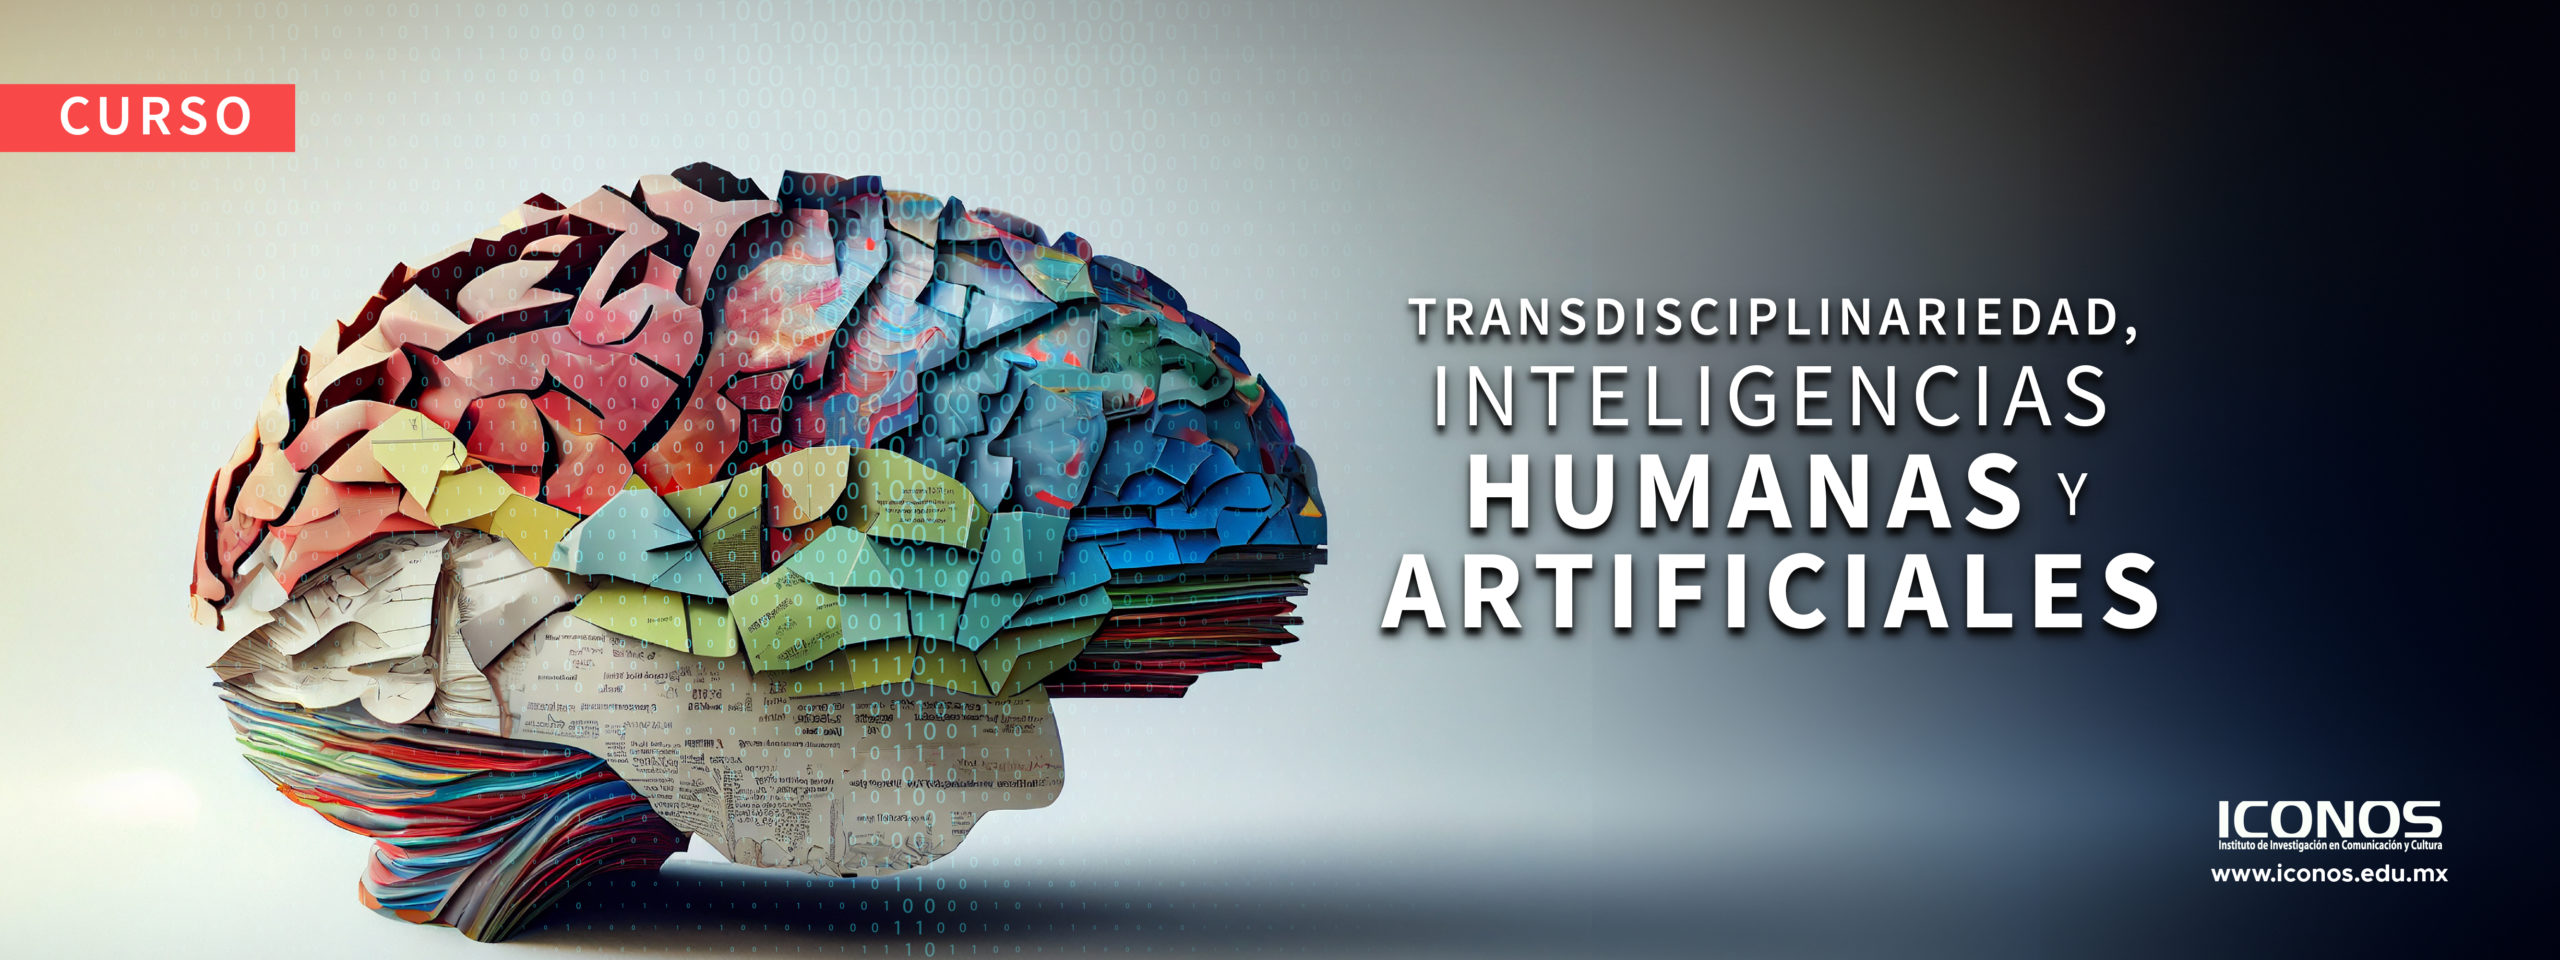 Transdisciplinariedad, inteligencias humanas y artificiales